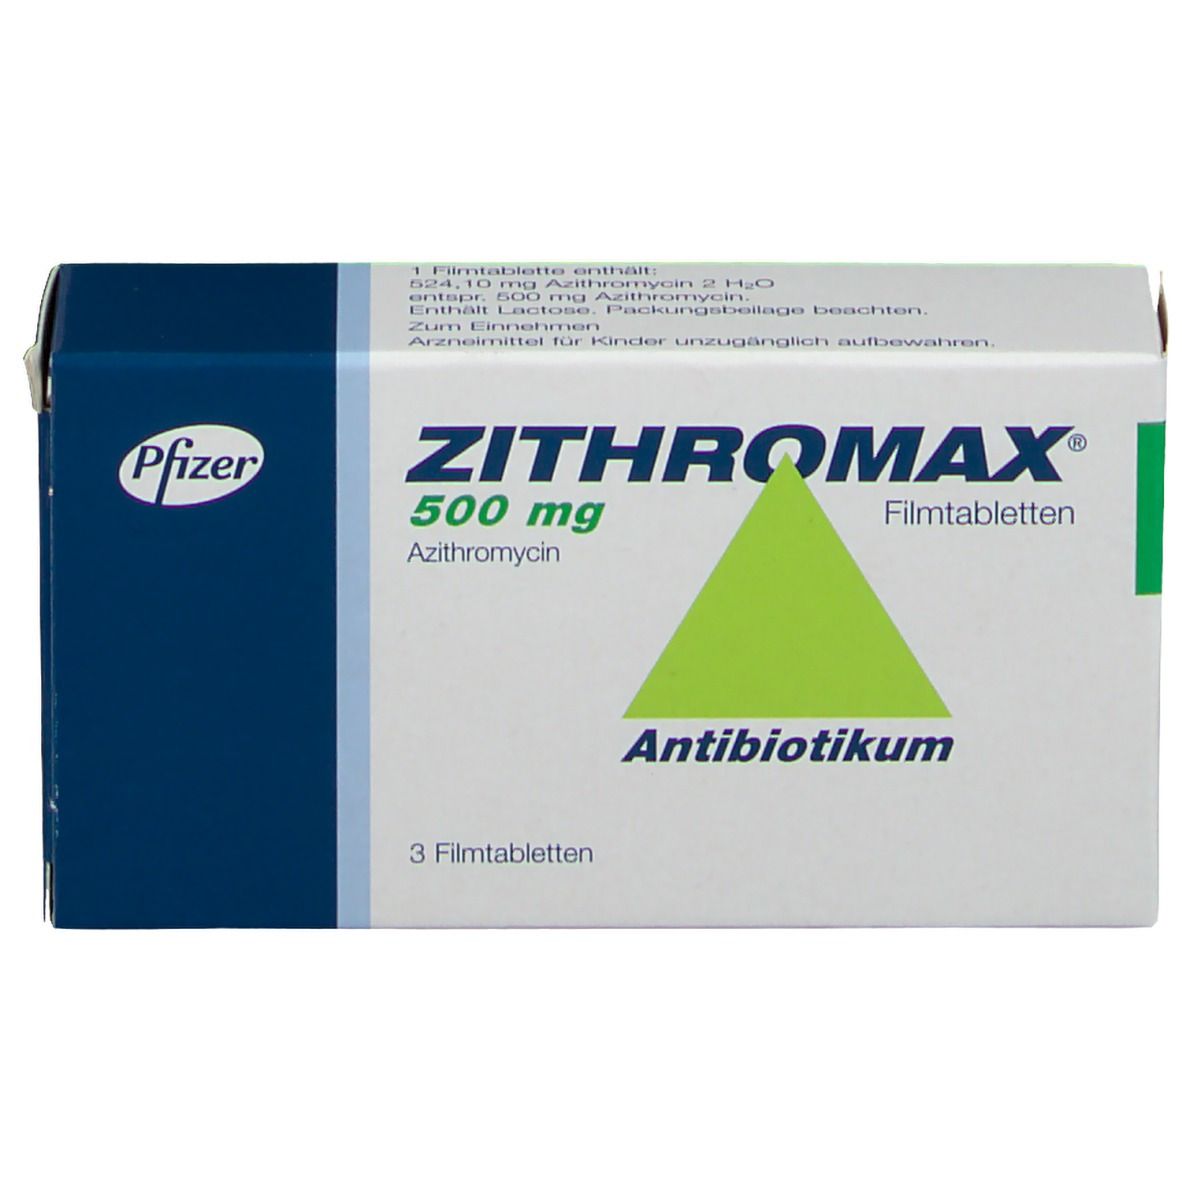 دواء زيثروماكس